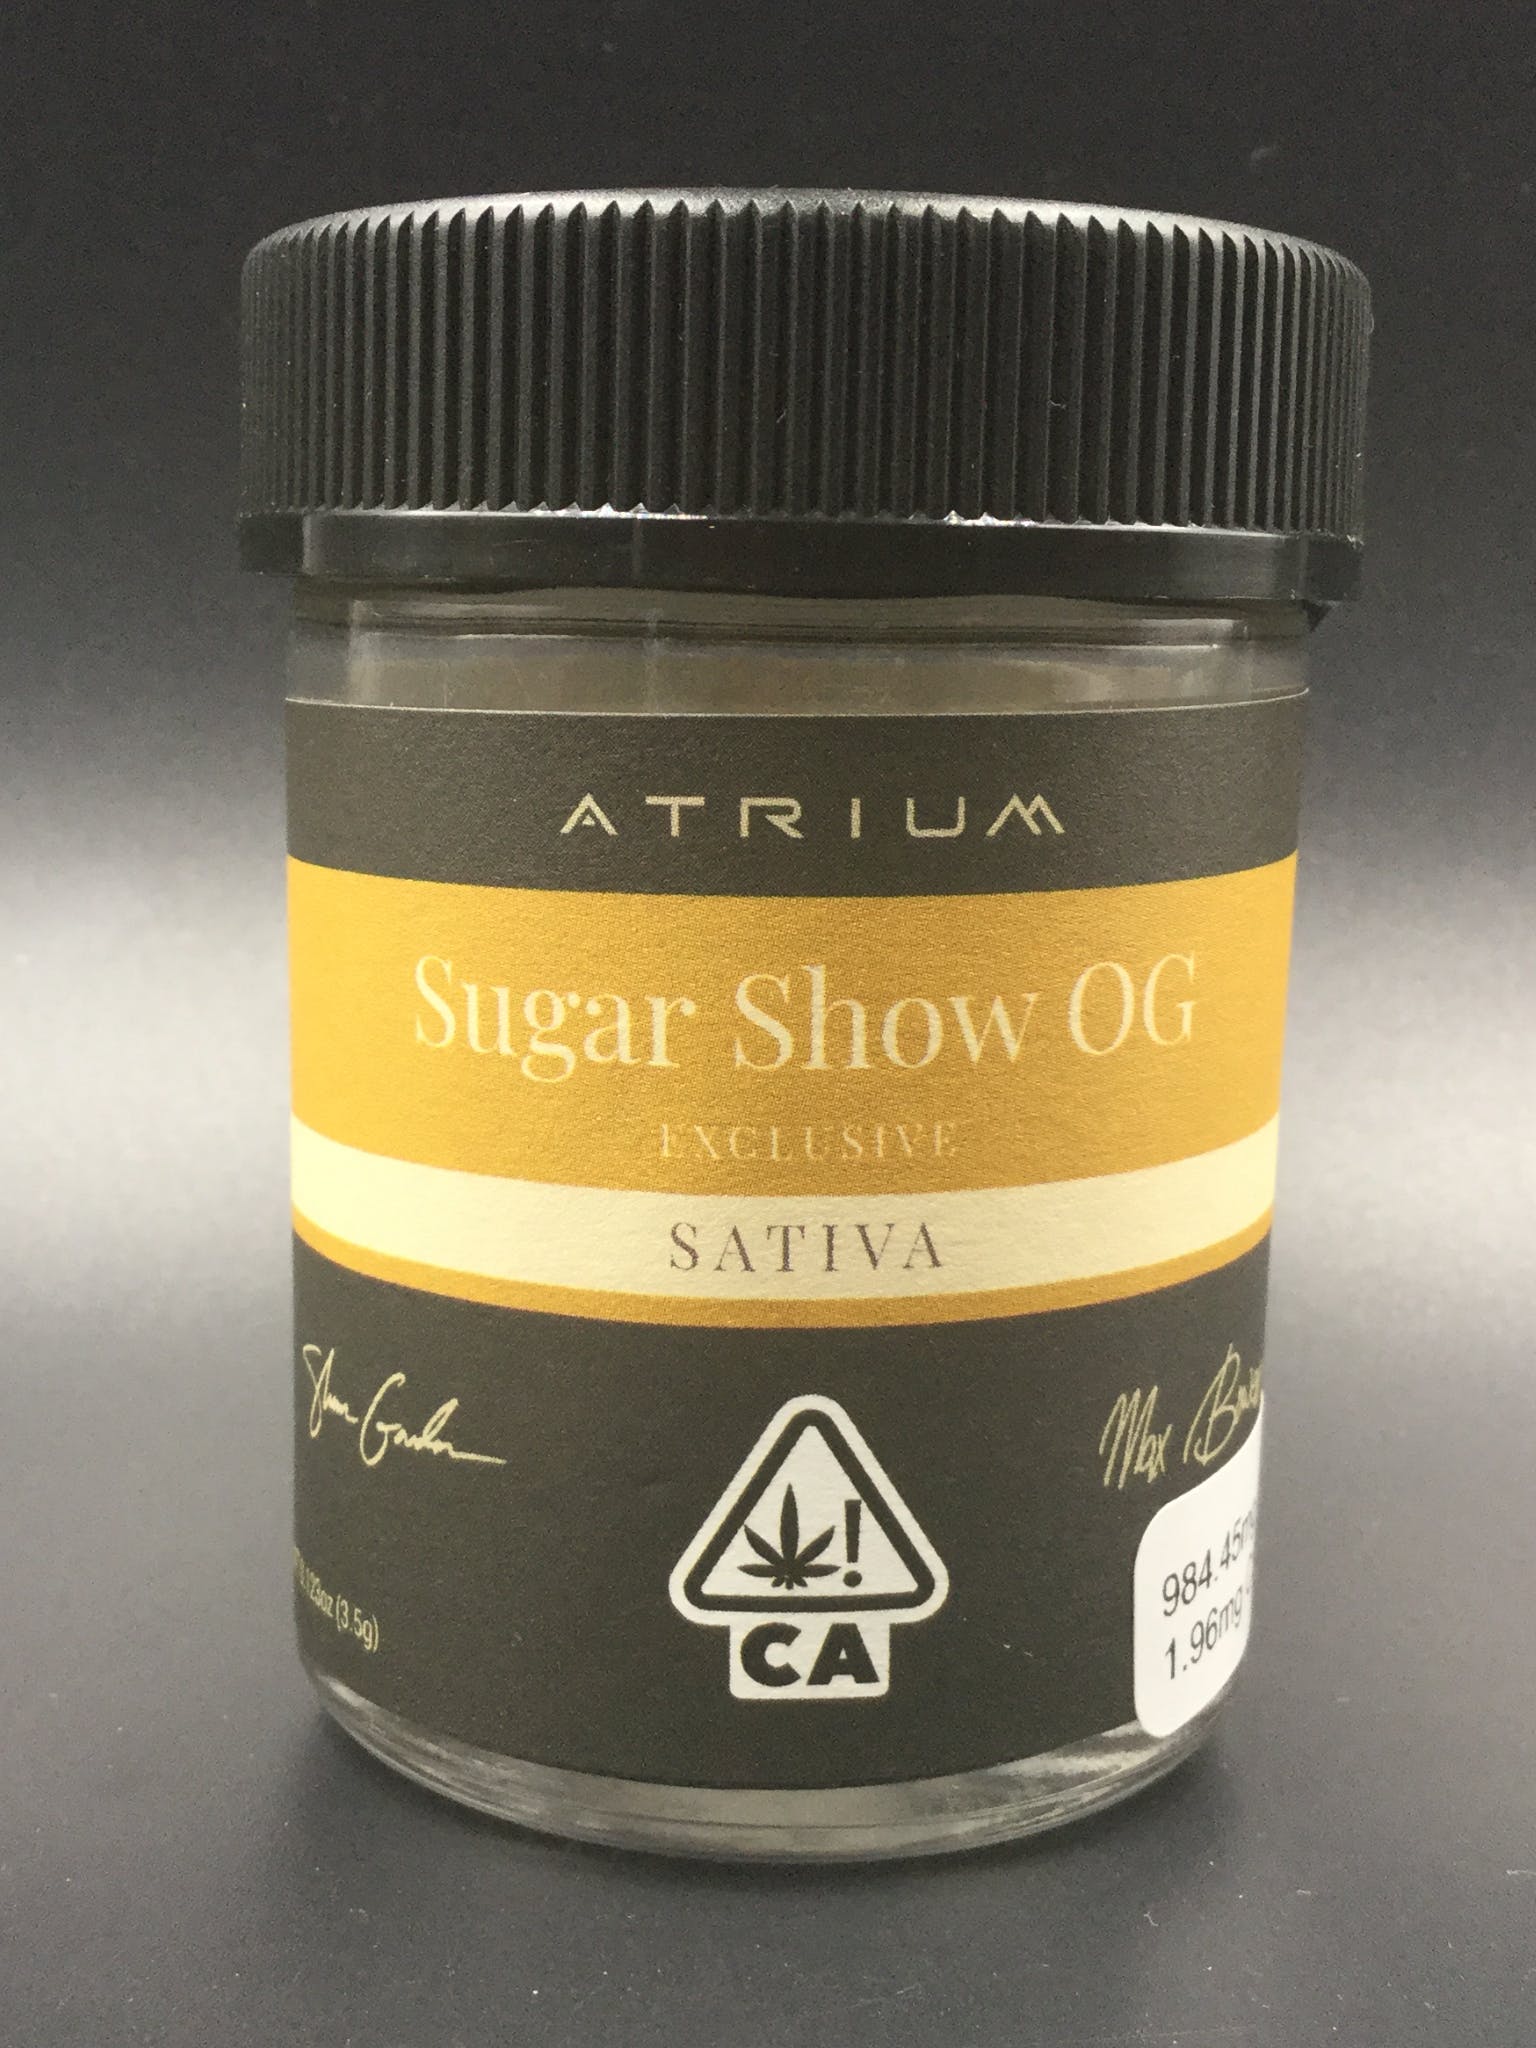 sativa-atrium-sugar-show-og